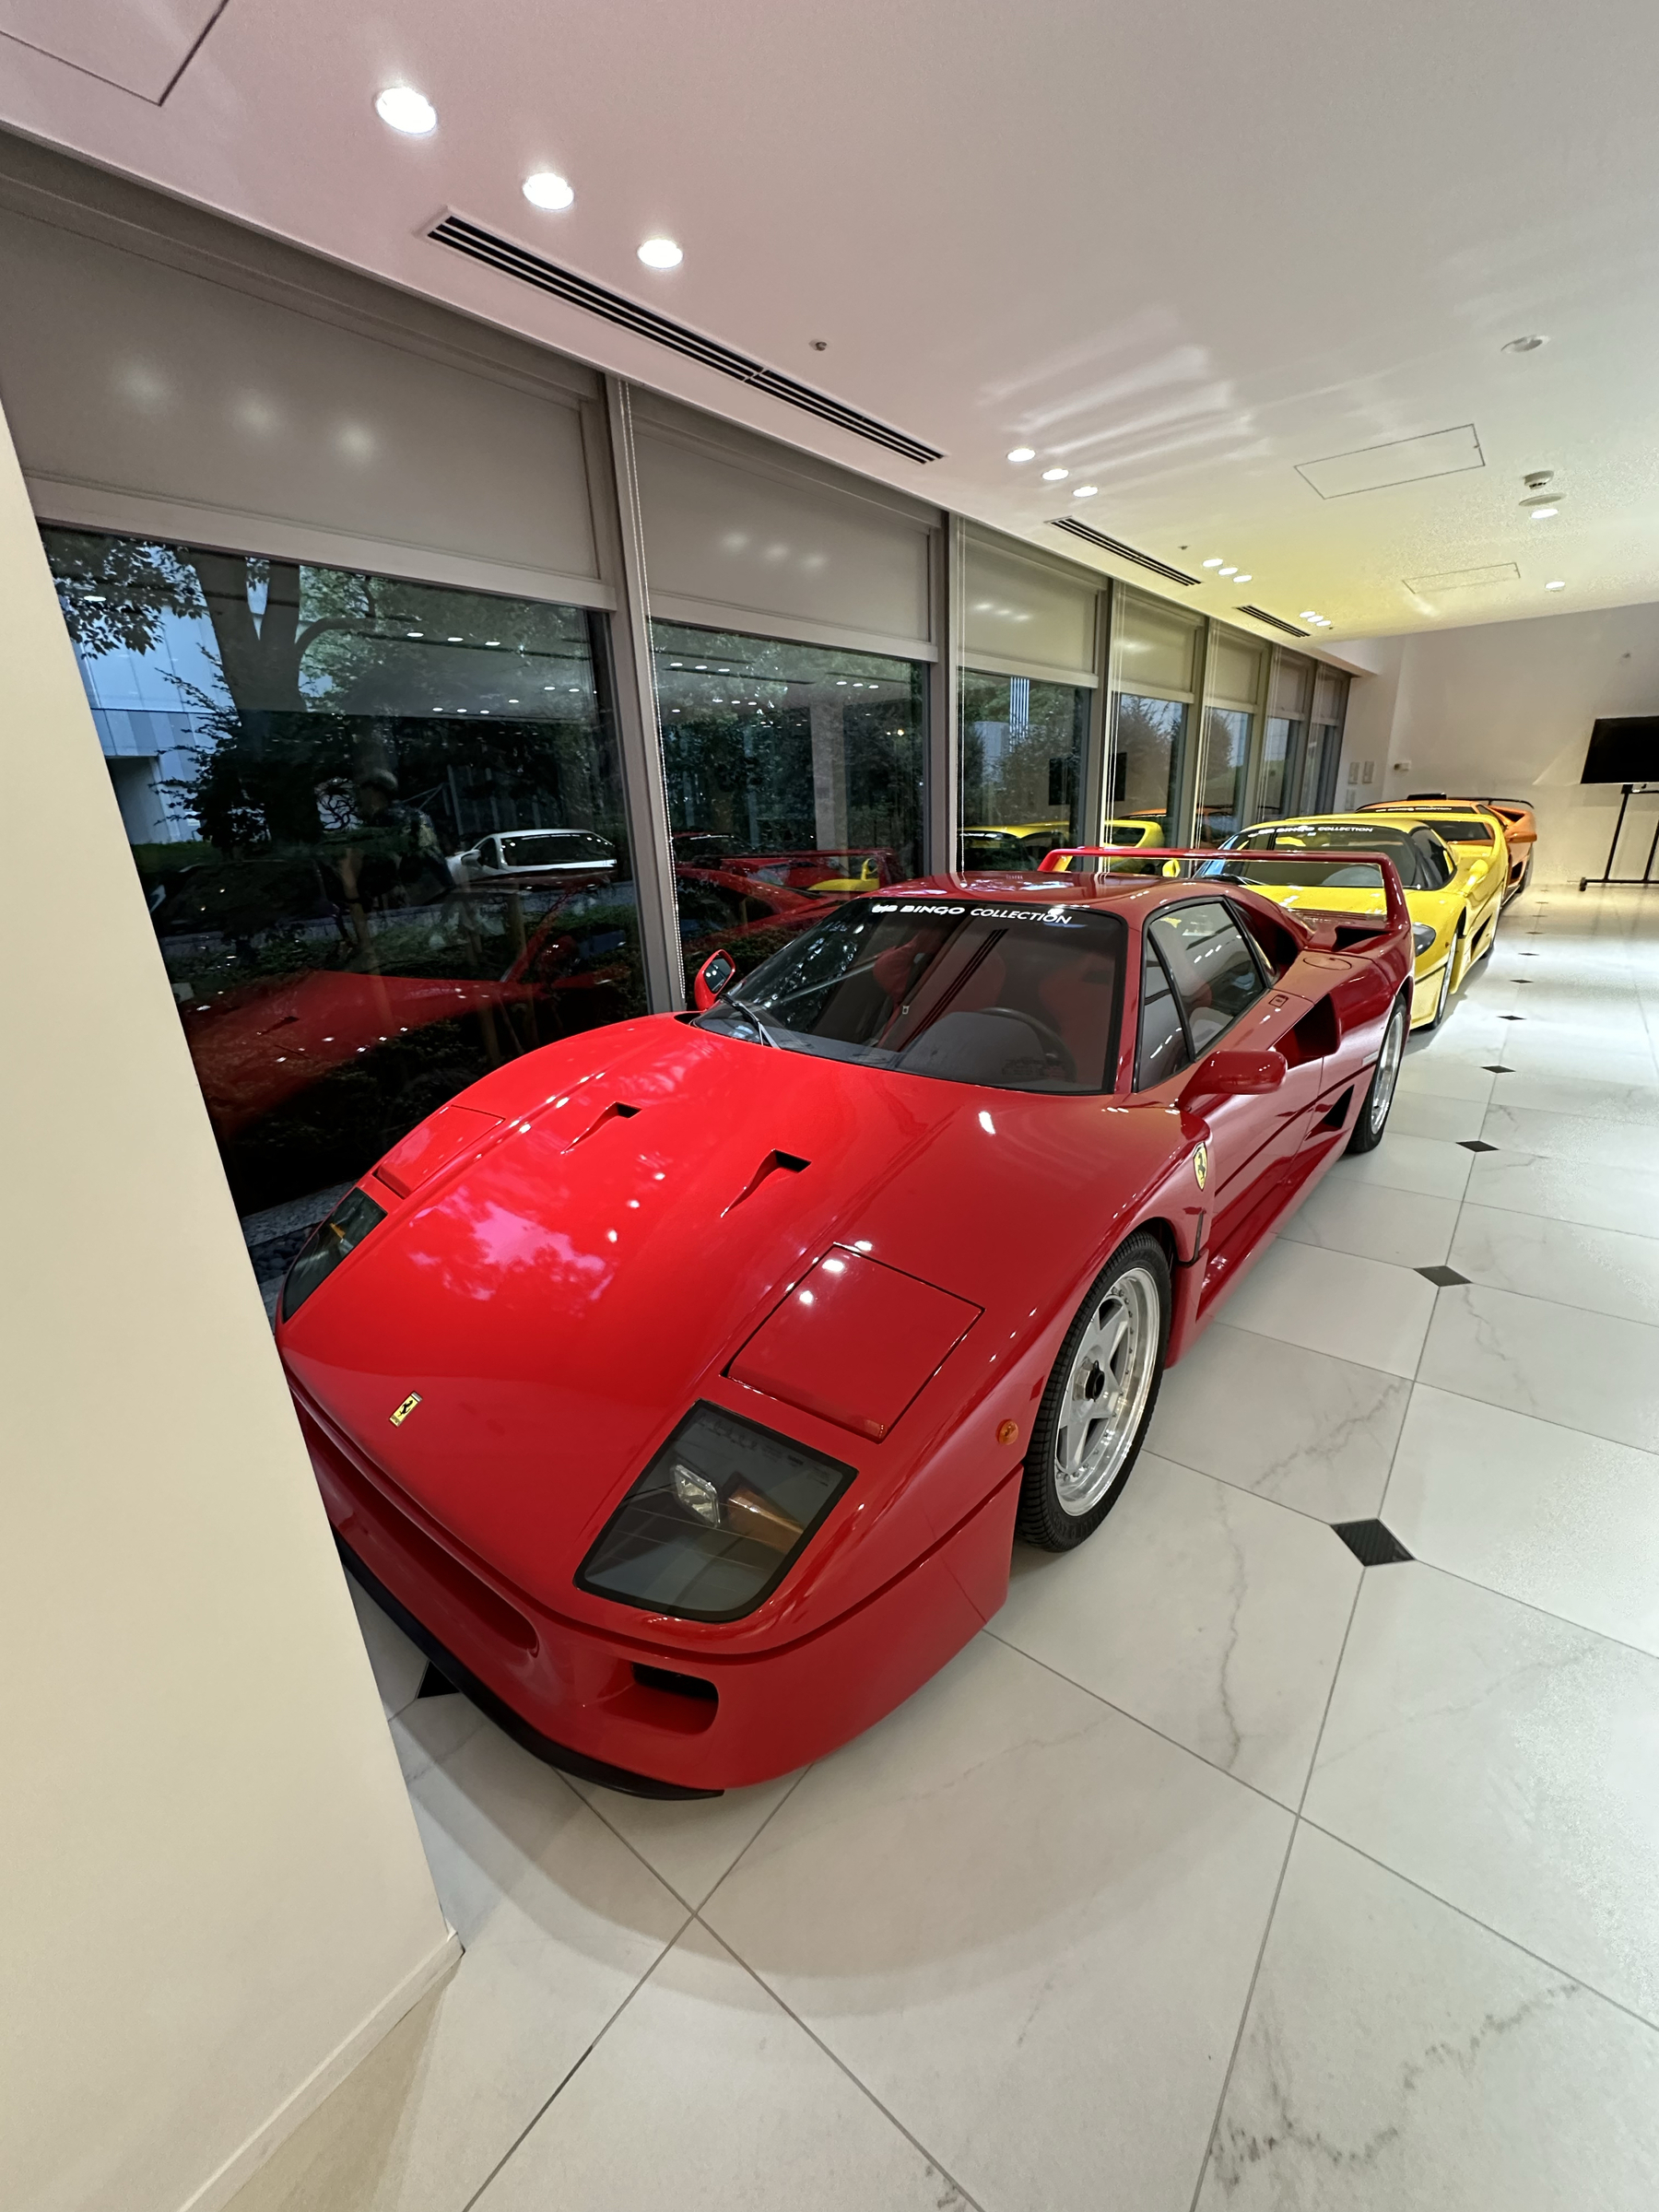 a red Ferrari F50